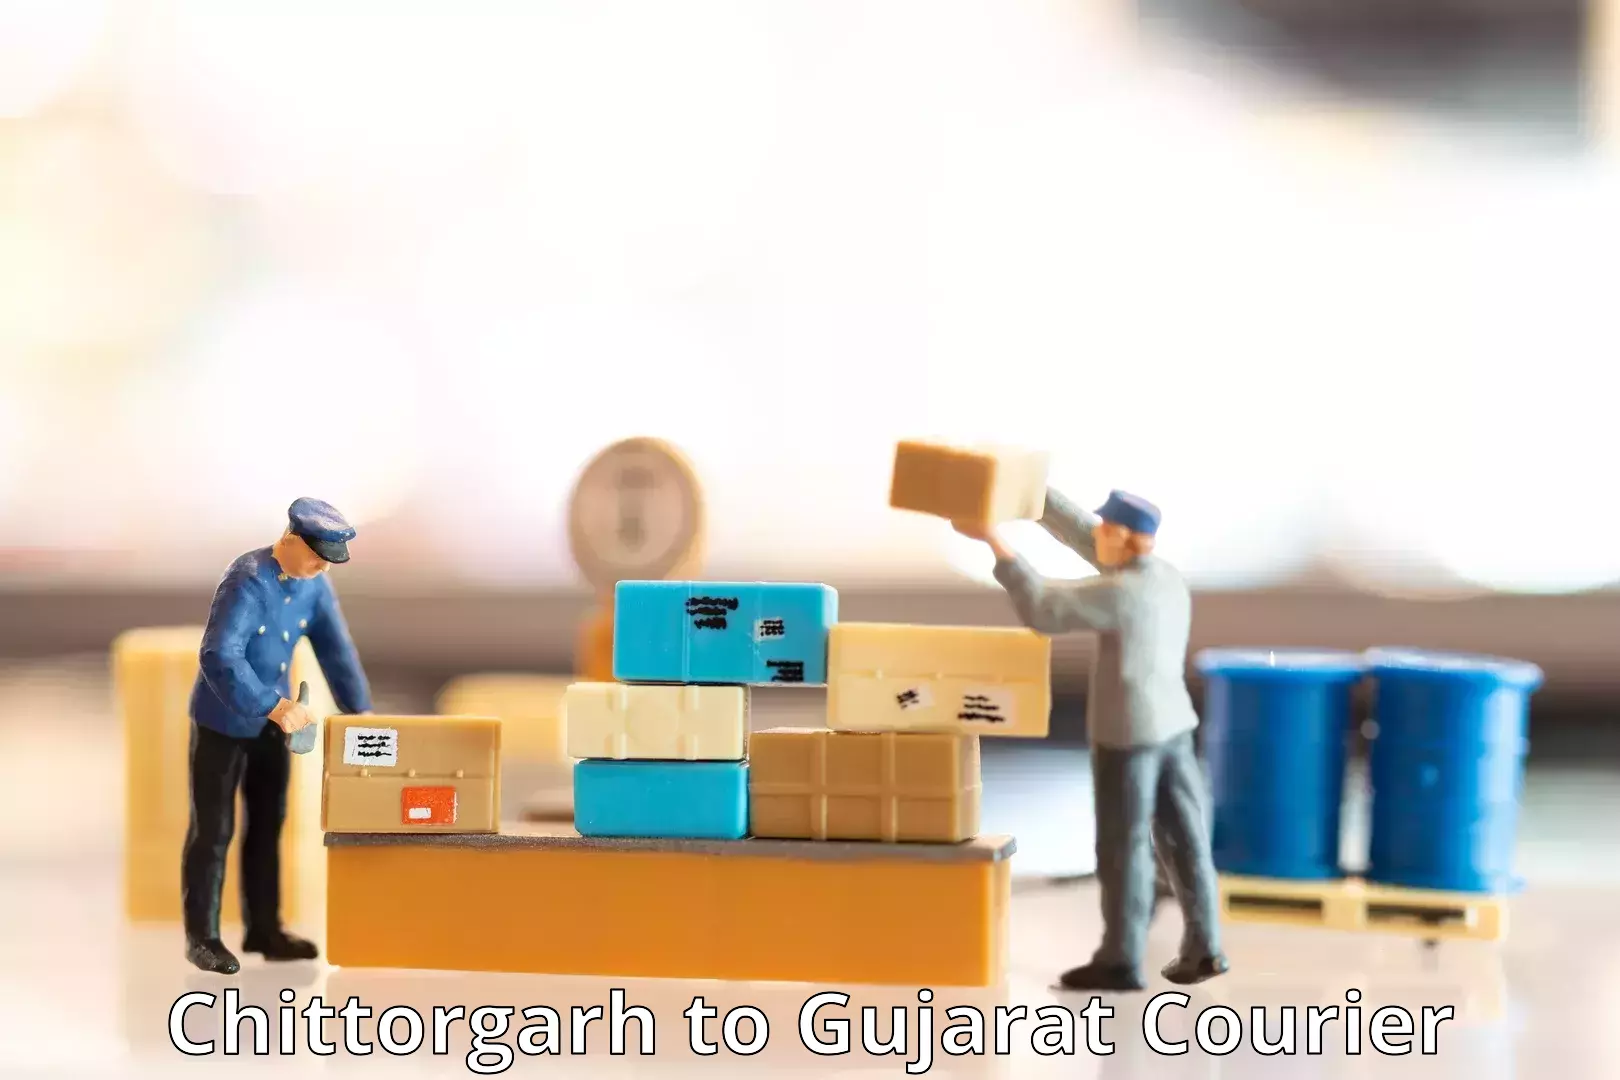 24-hour courier service Chittorgarh to Gujarat